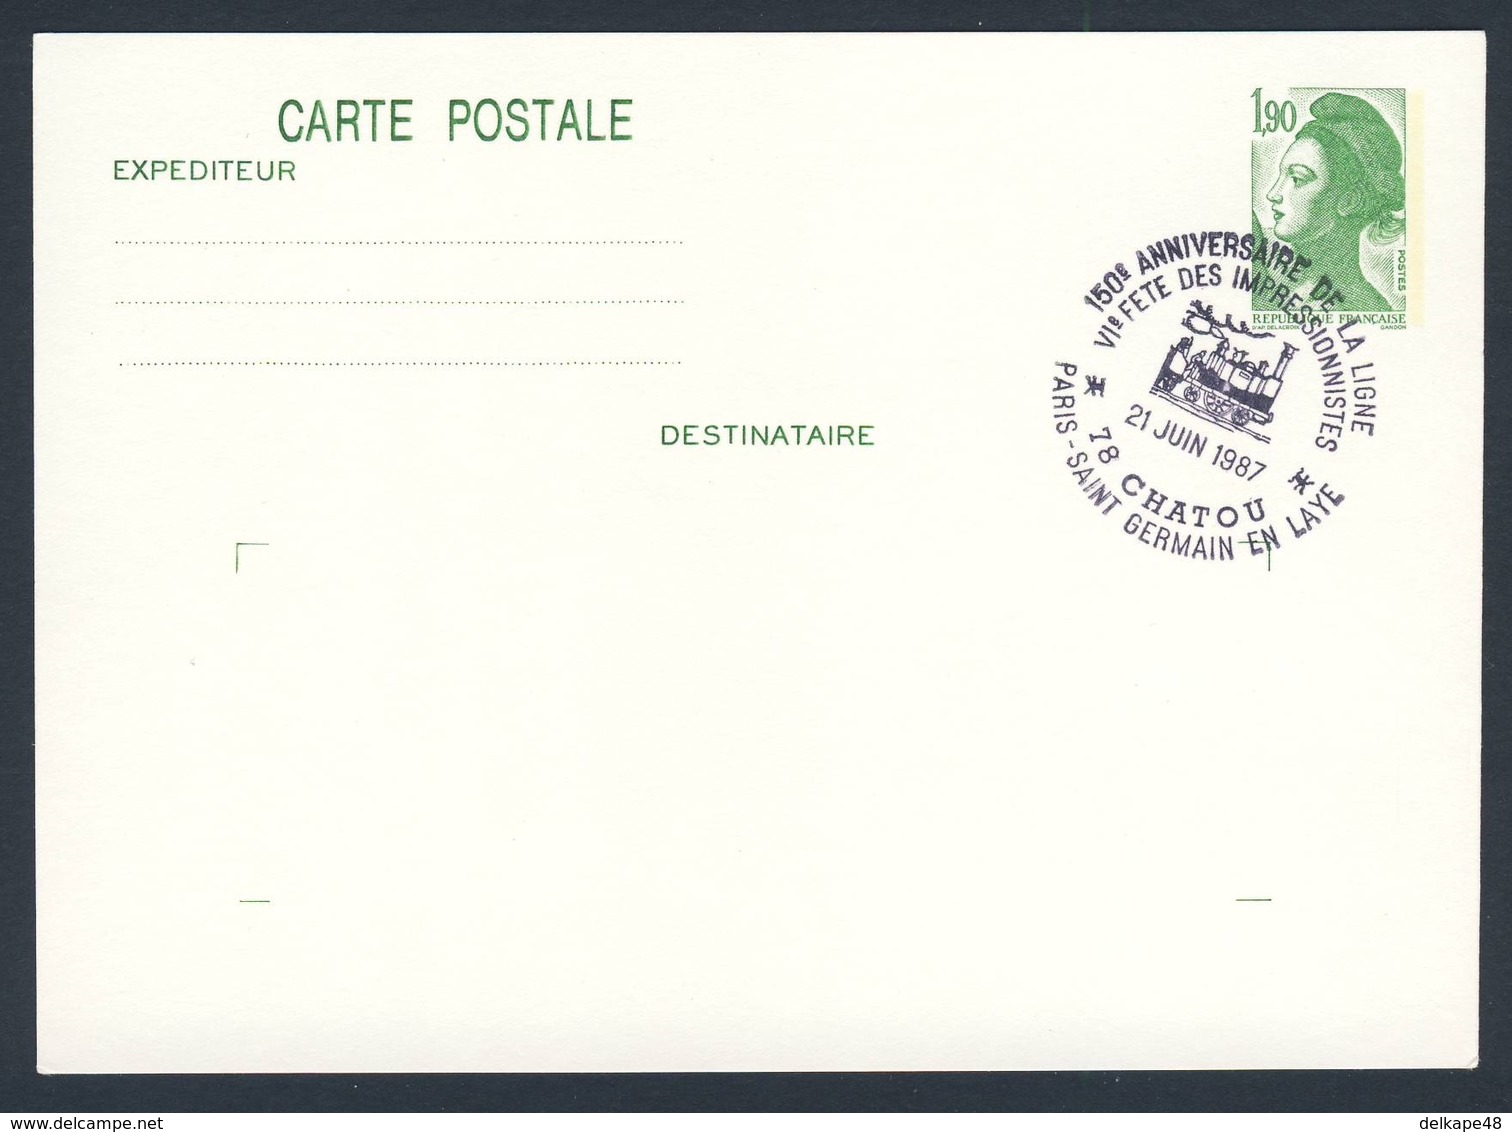 France Rep. Française 1987 Card / Karte / Carte - 150 Ann. Ligne Paris - Saint-Germain, Chatou / Railway / Eisenbahn - Treinen